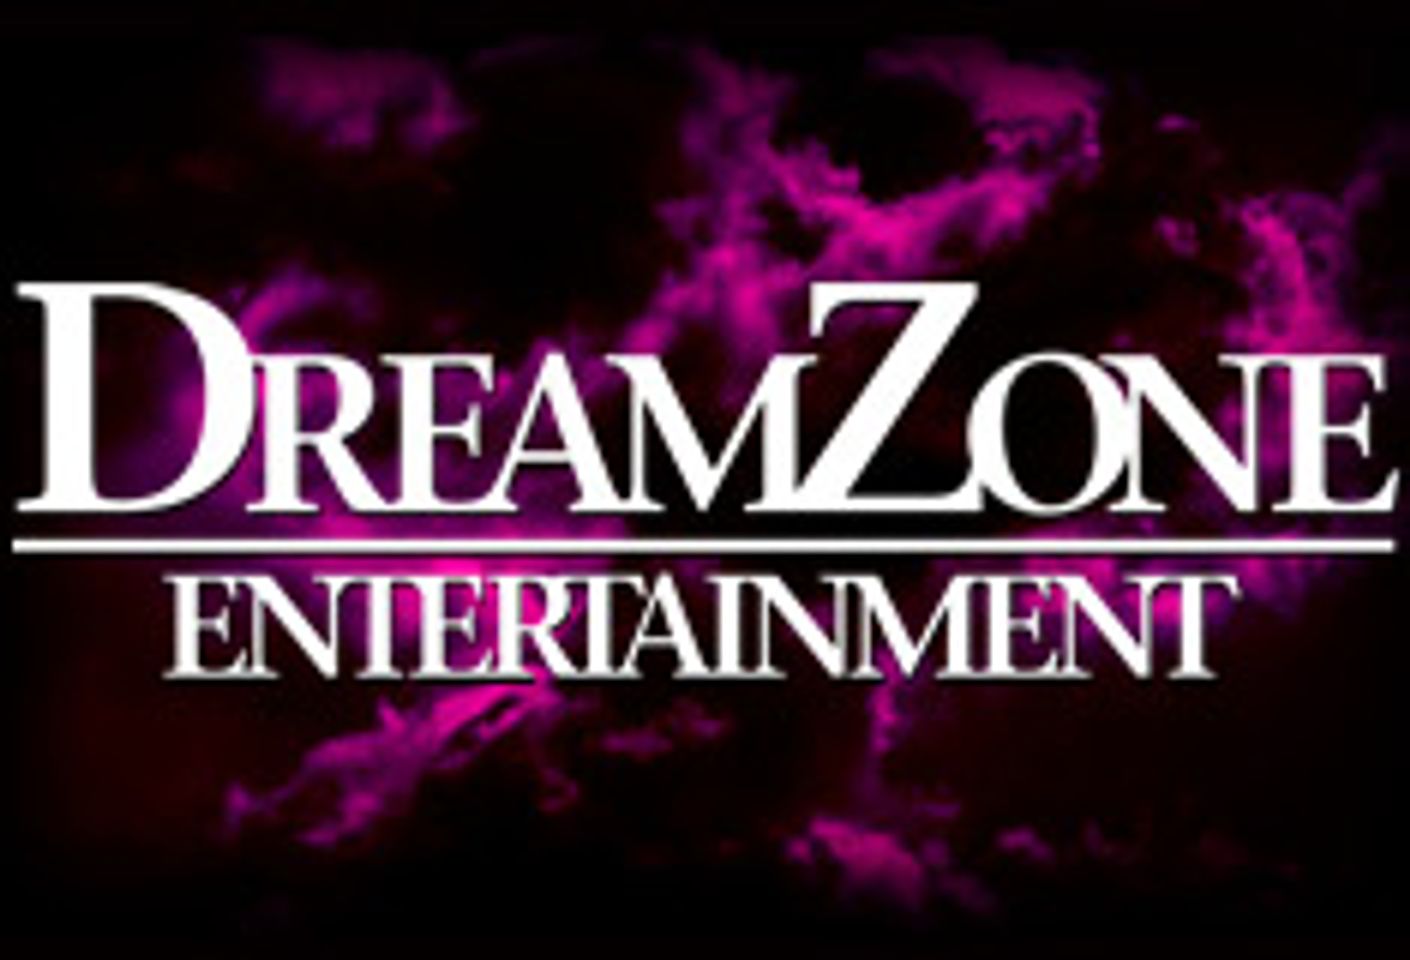 Dreamzone Sets Nov. 29 Ship Date for 'Mork & Mindy' Parody